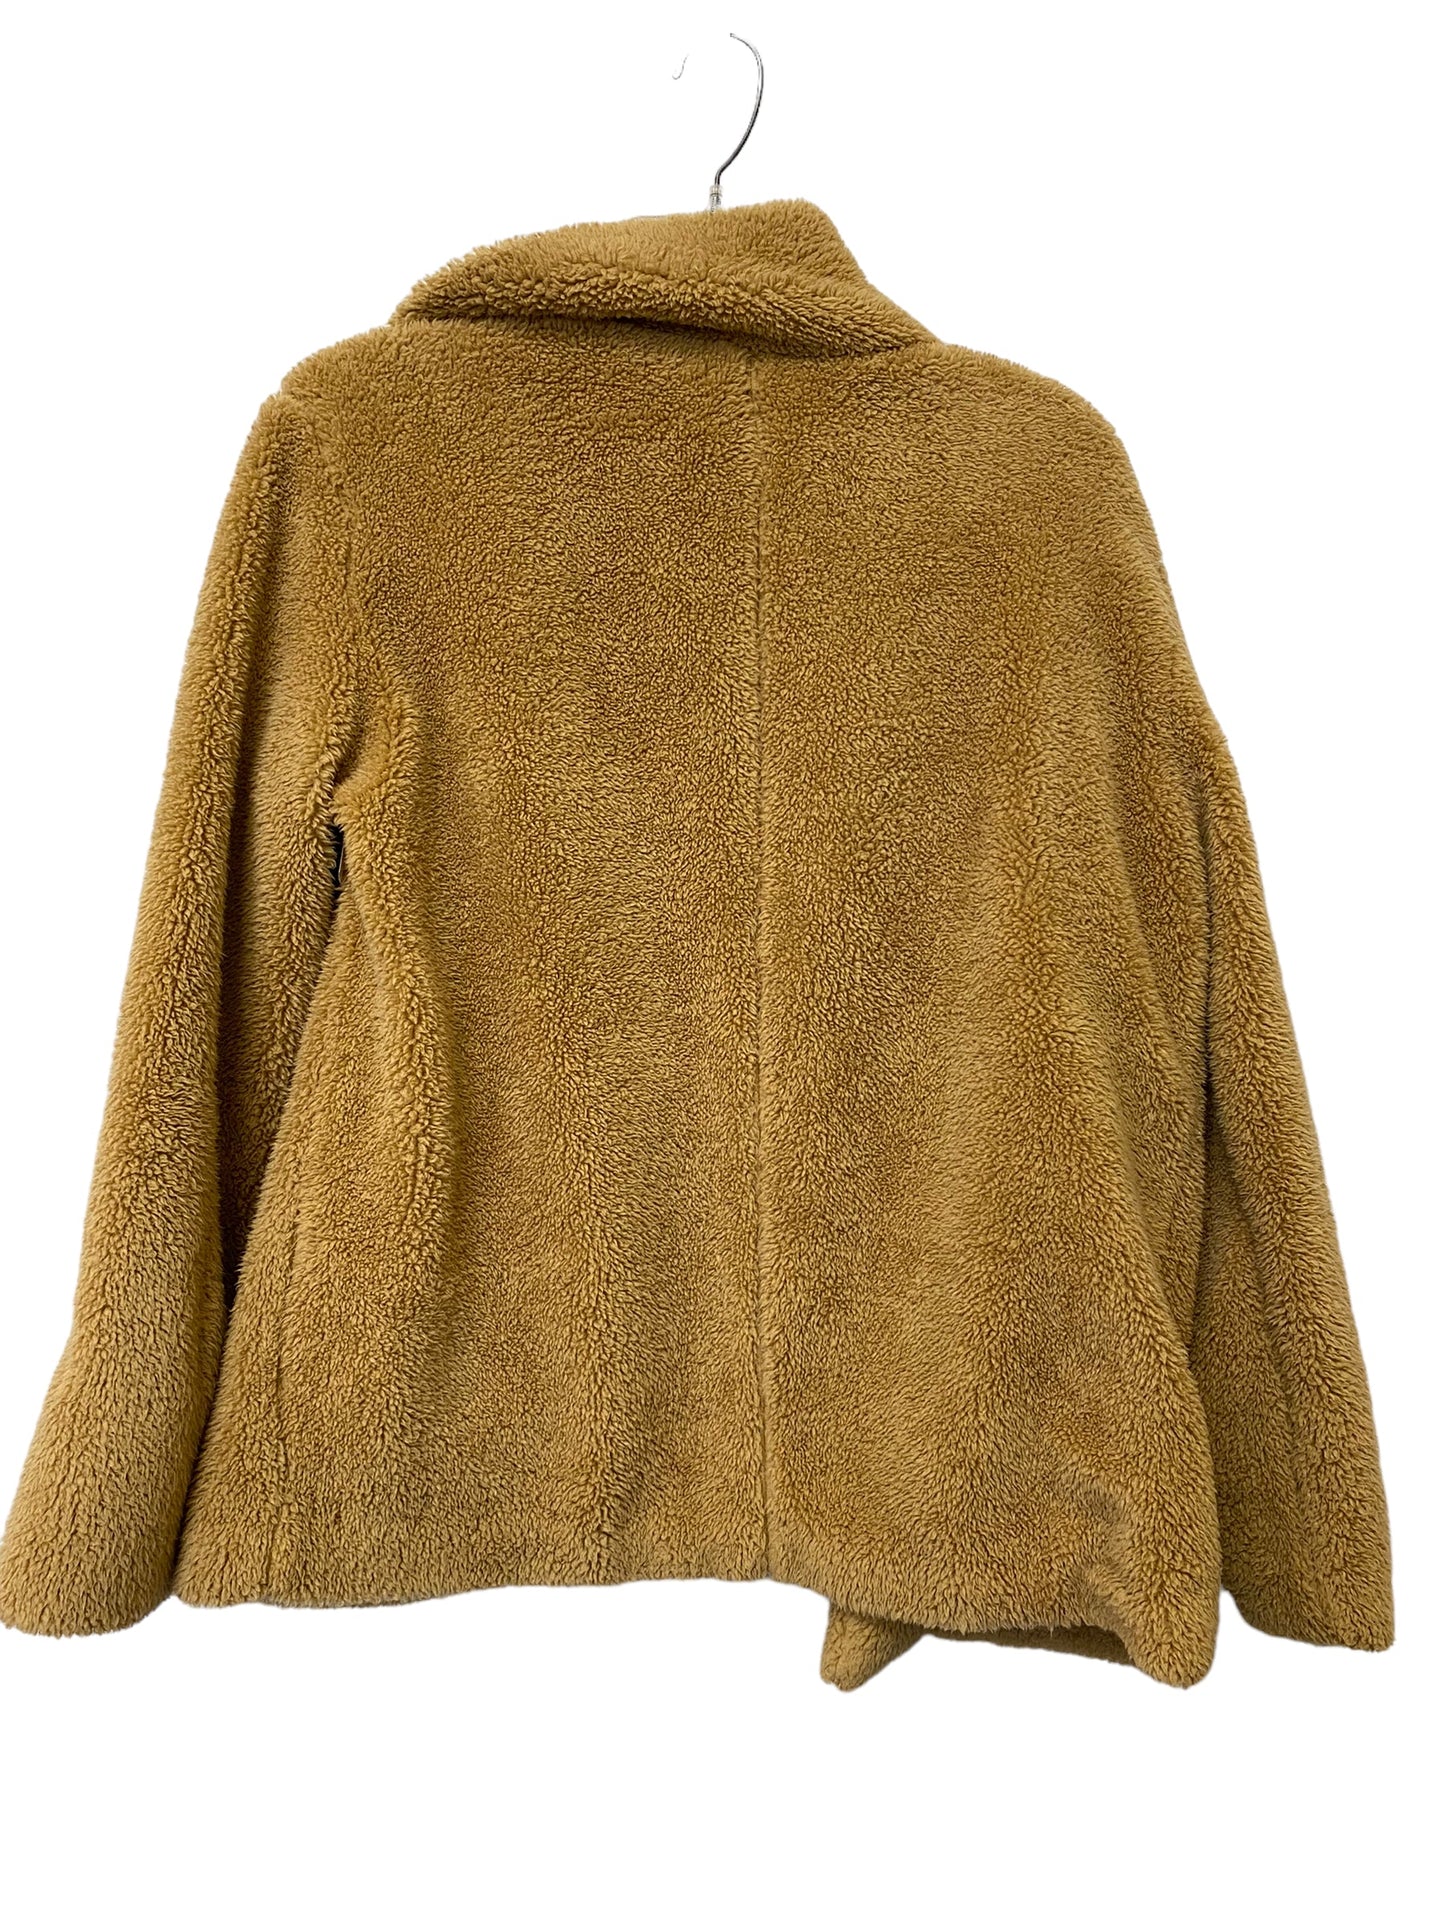 Jacket Faux Fur & Sherpa By Mudpie  Size: S